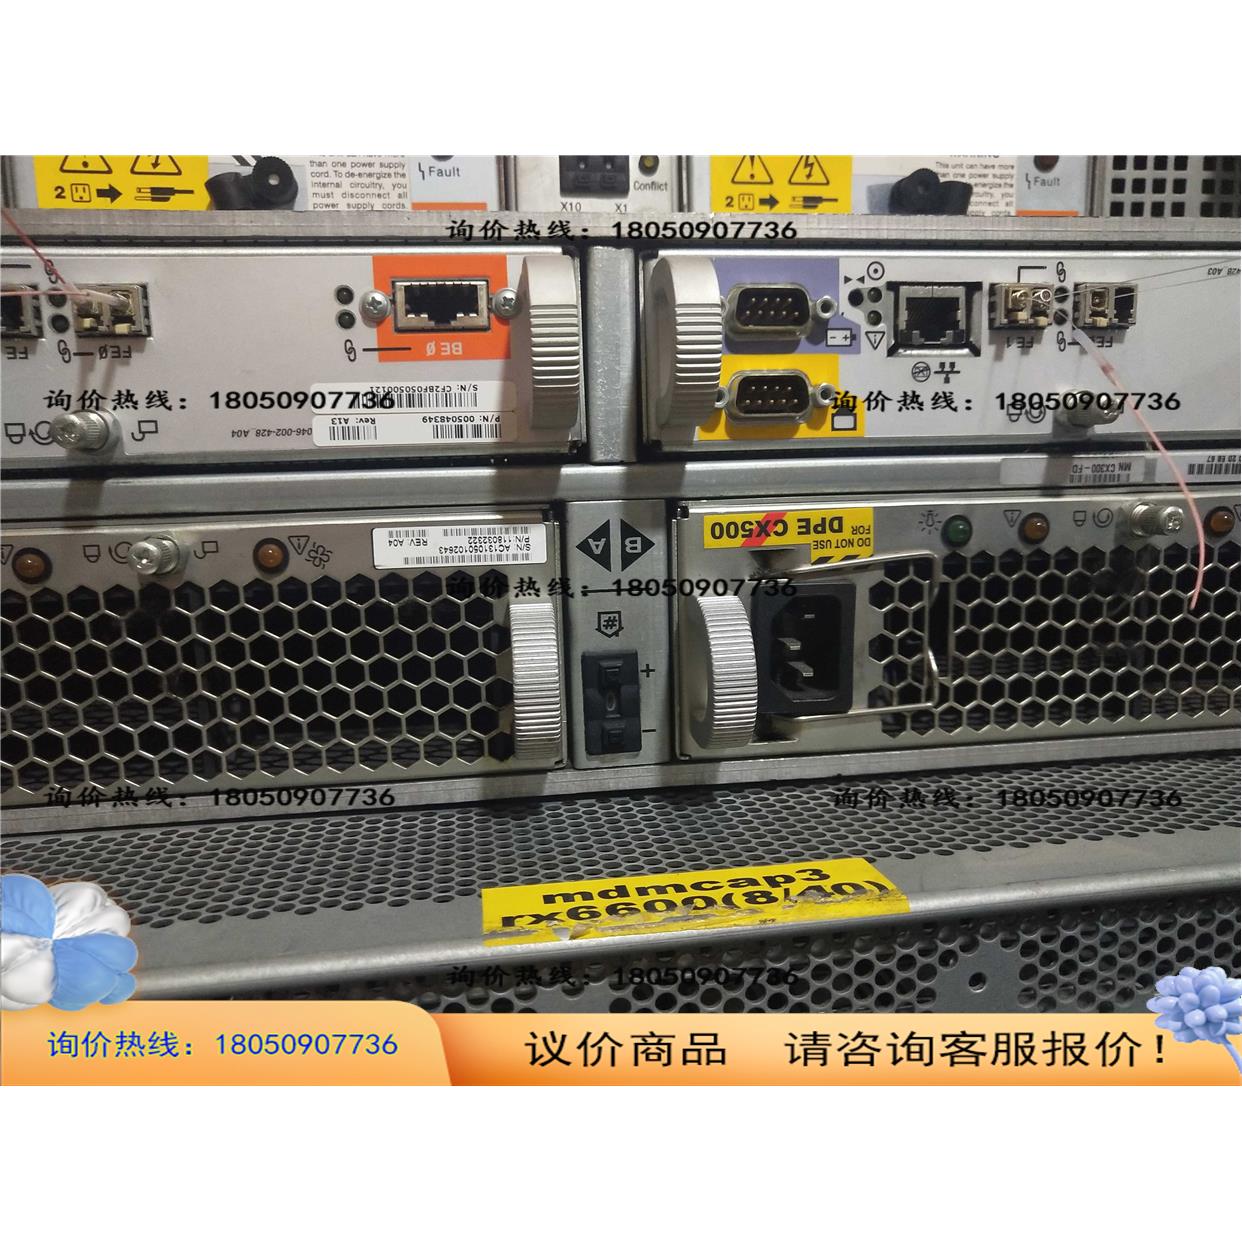 CX300存储整机控制器 100-561-501 005048349控制器议价商品